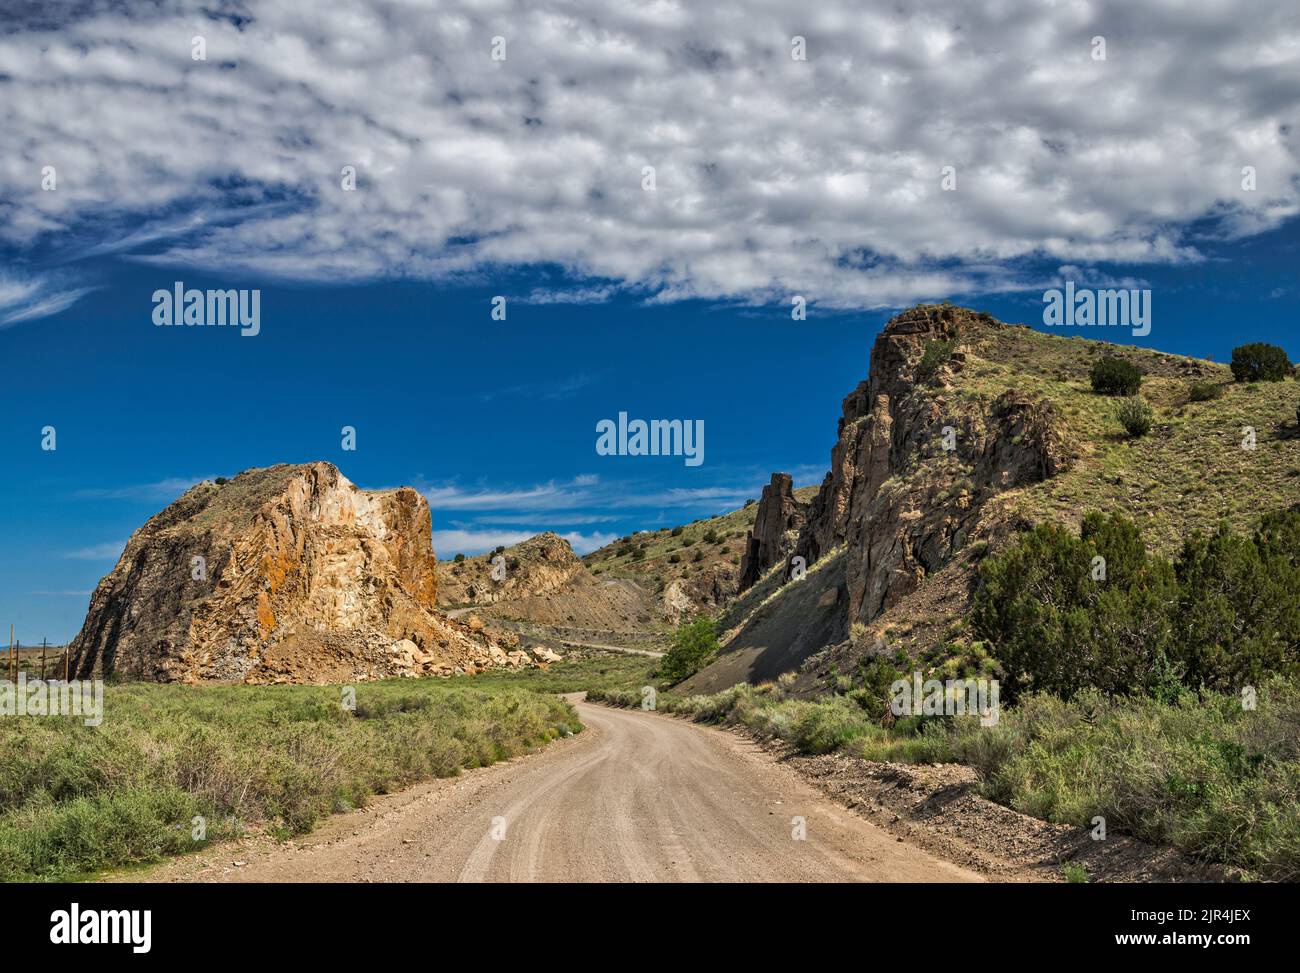 Devils Throne, igneous intrusion, Cerrillos Hills State Park, near Los Cerrillos, New Mexico, USA Stock Photo